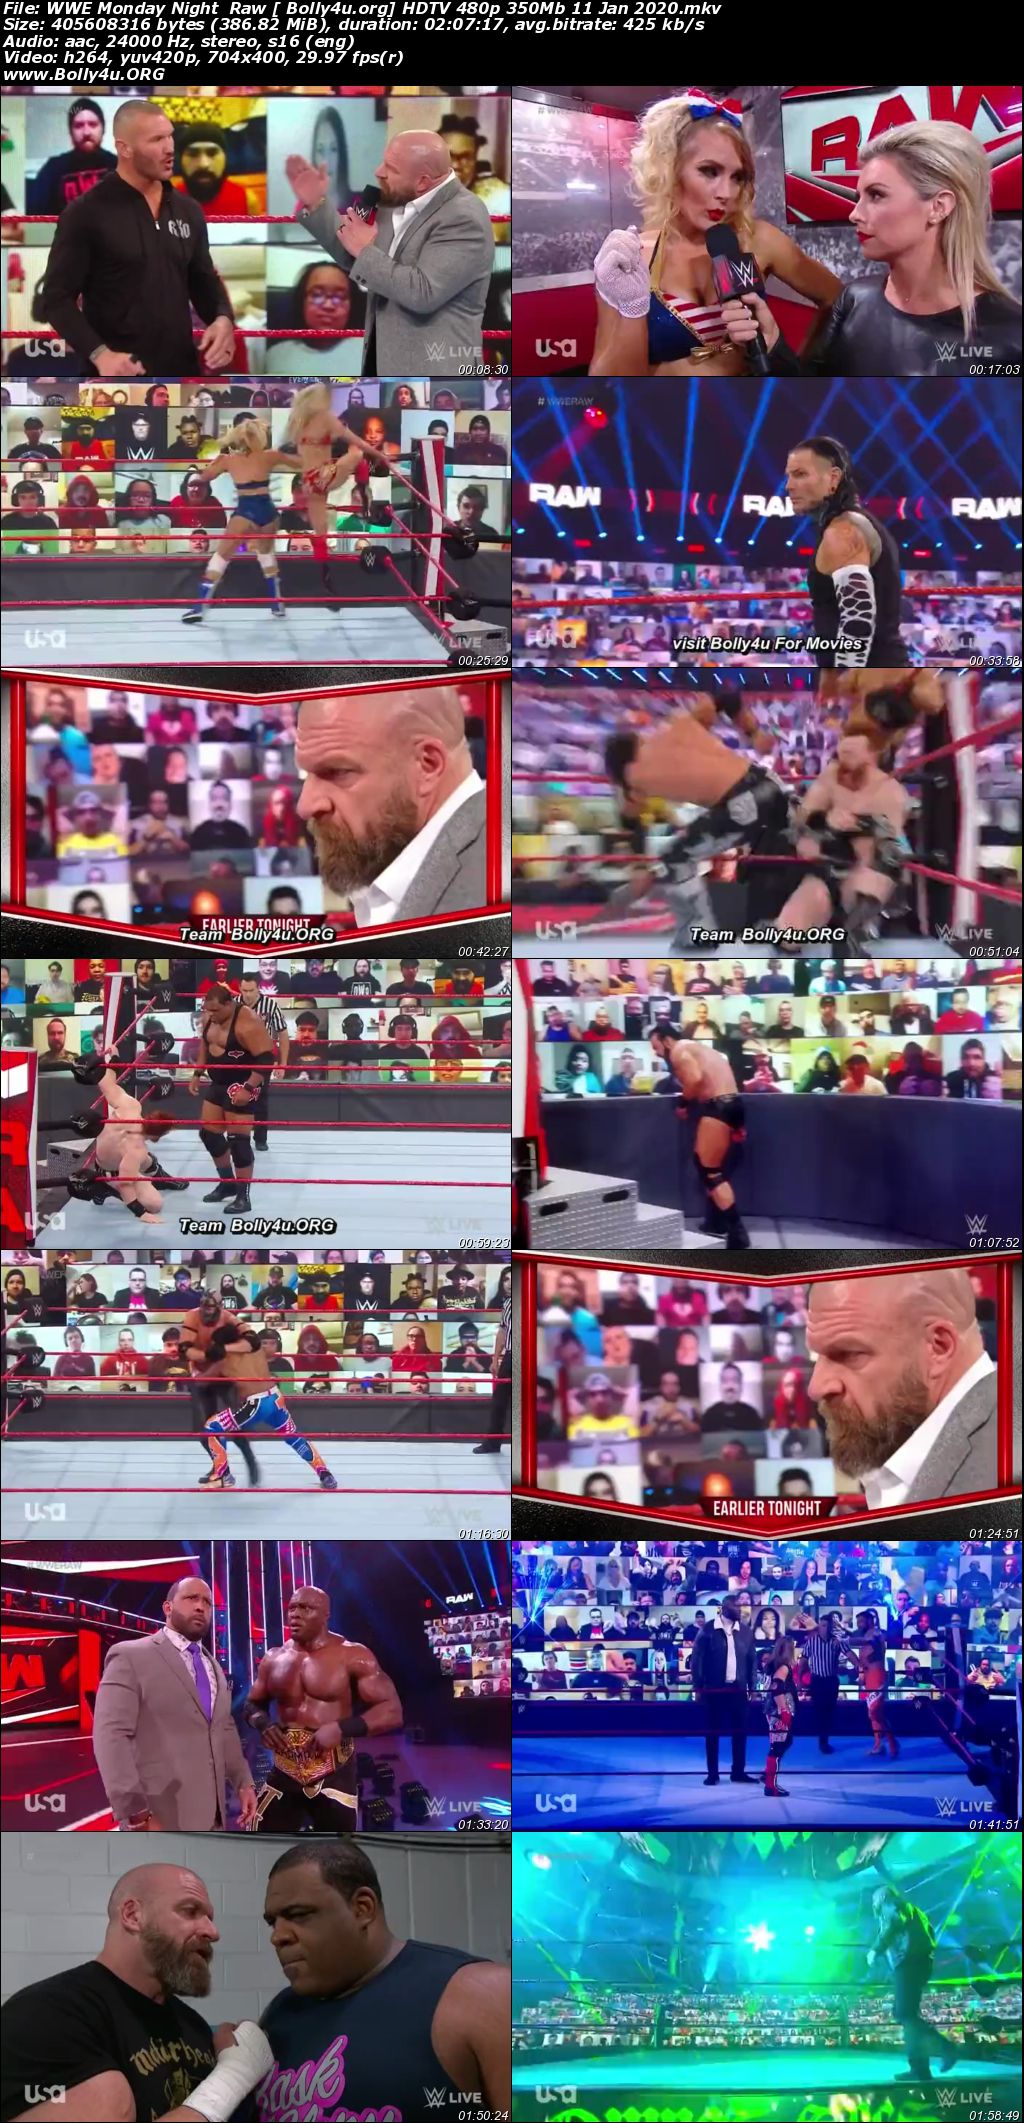 WWE Monday Night Raw HDTV 480p 350Mb 11 Jan 2021 Download